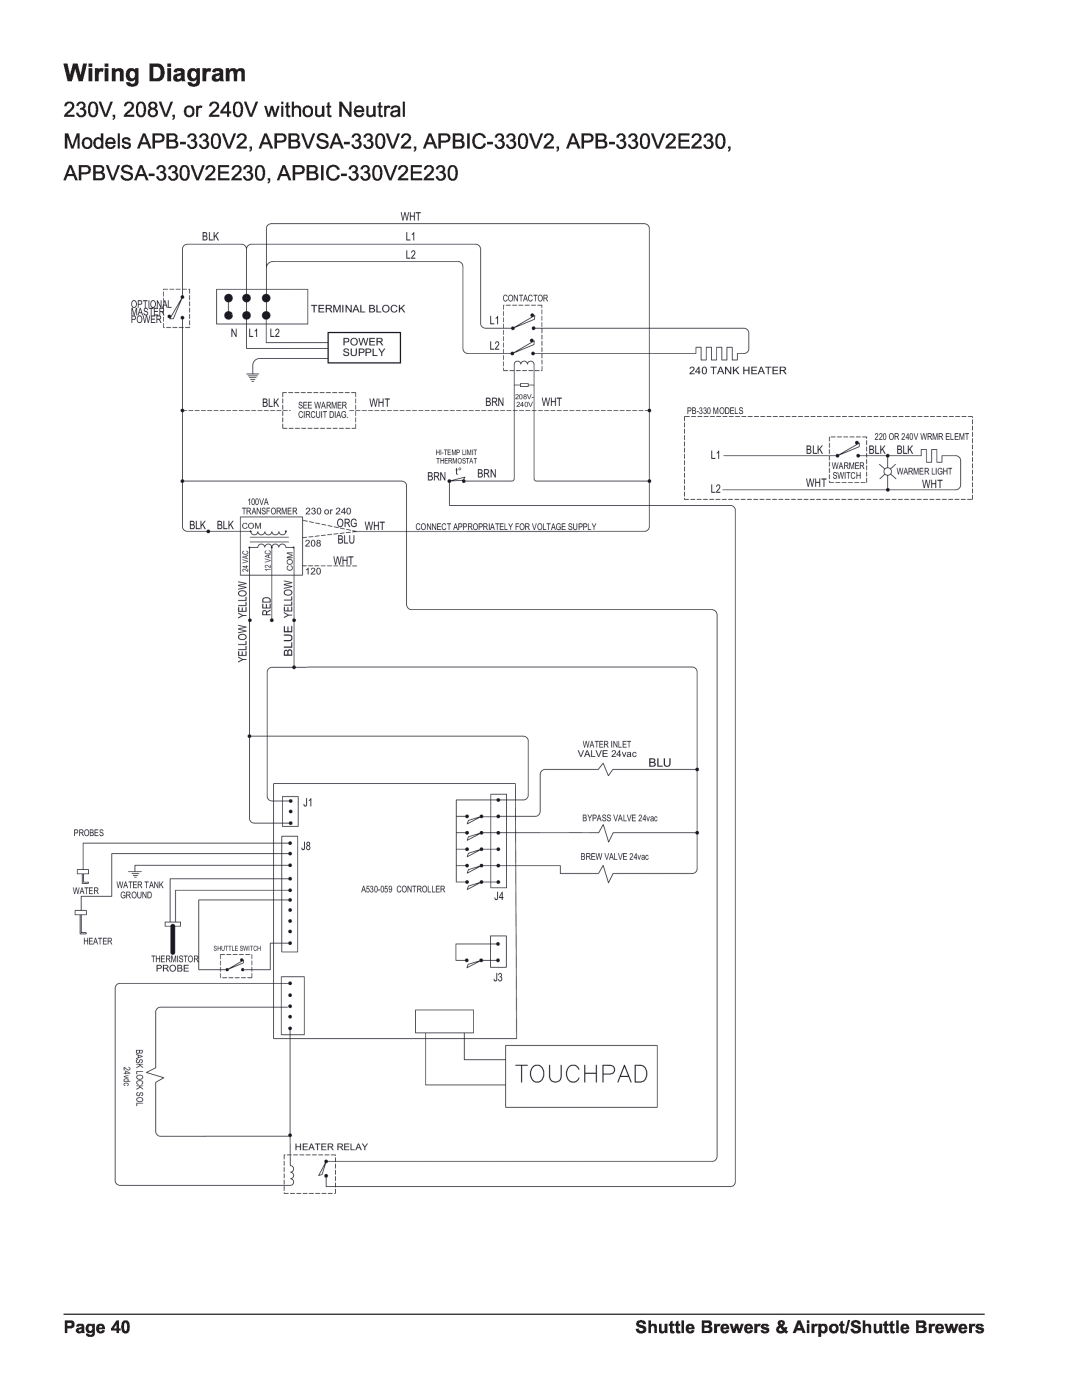 Grindmaster APBVSA-430V2 Wiring Diagram, 4/5#0!$, 230V, 208V, or 240V without Neutral, Page, 1 /, 51 Wƒ %51, 25* +7 